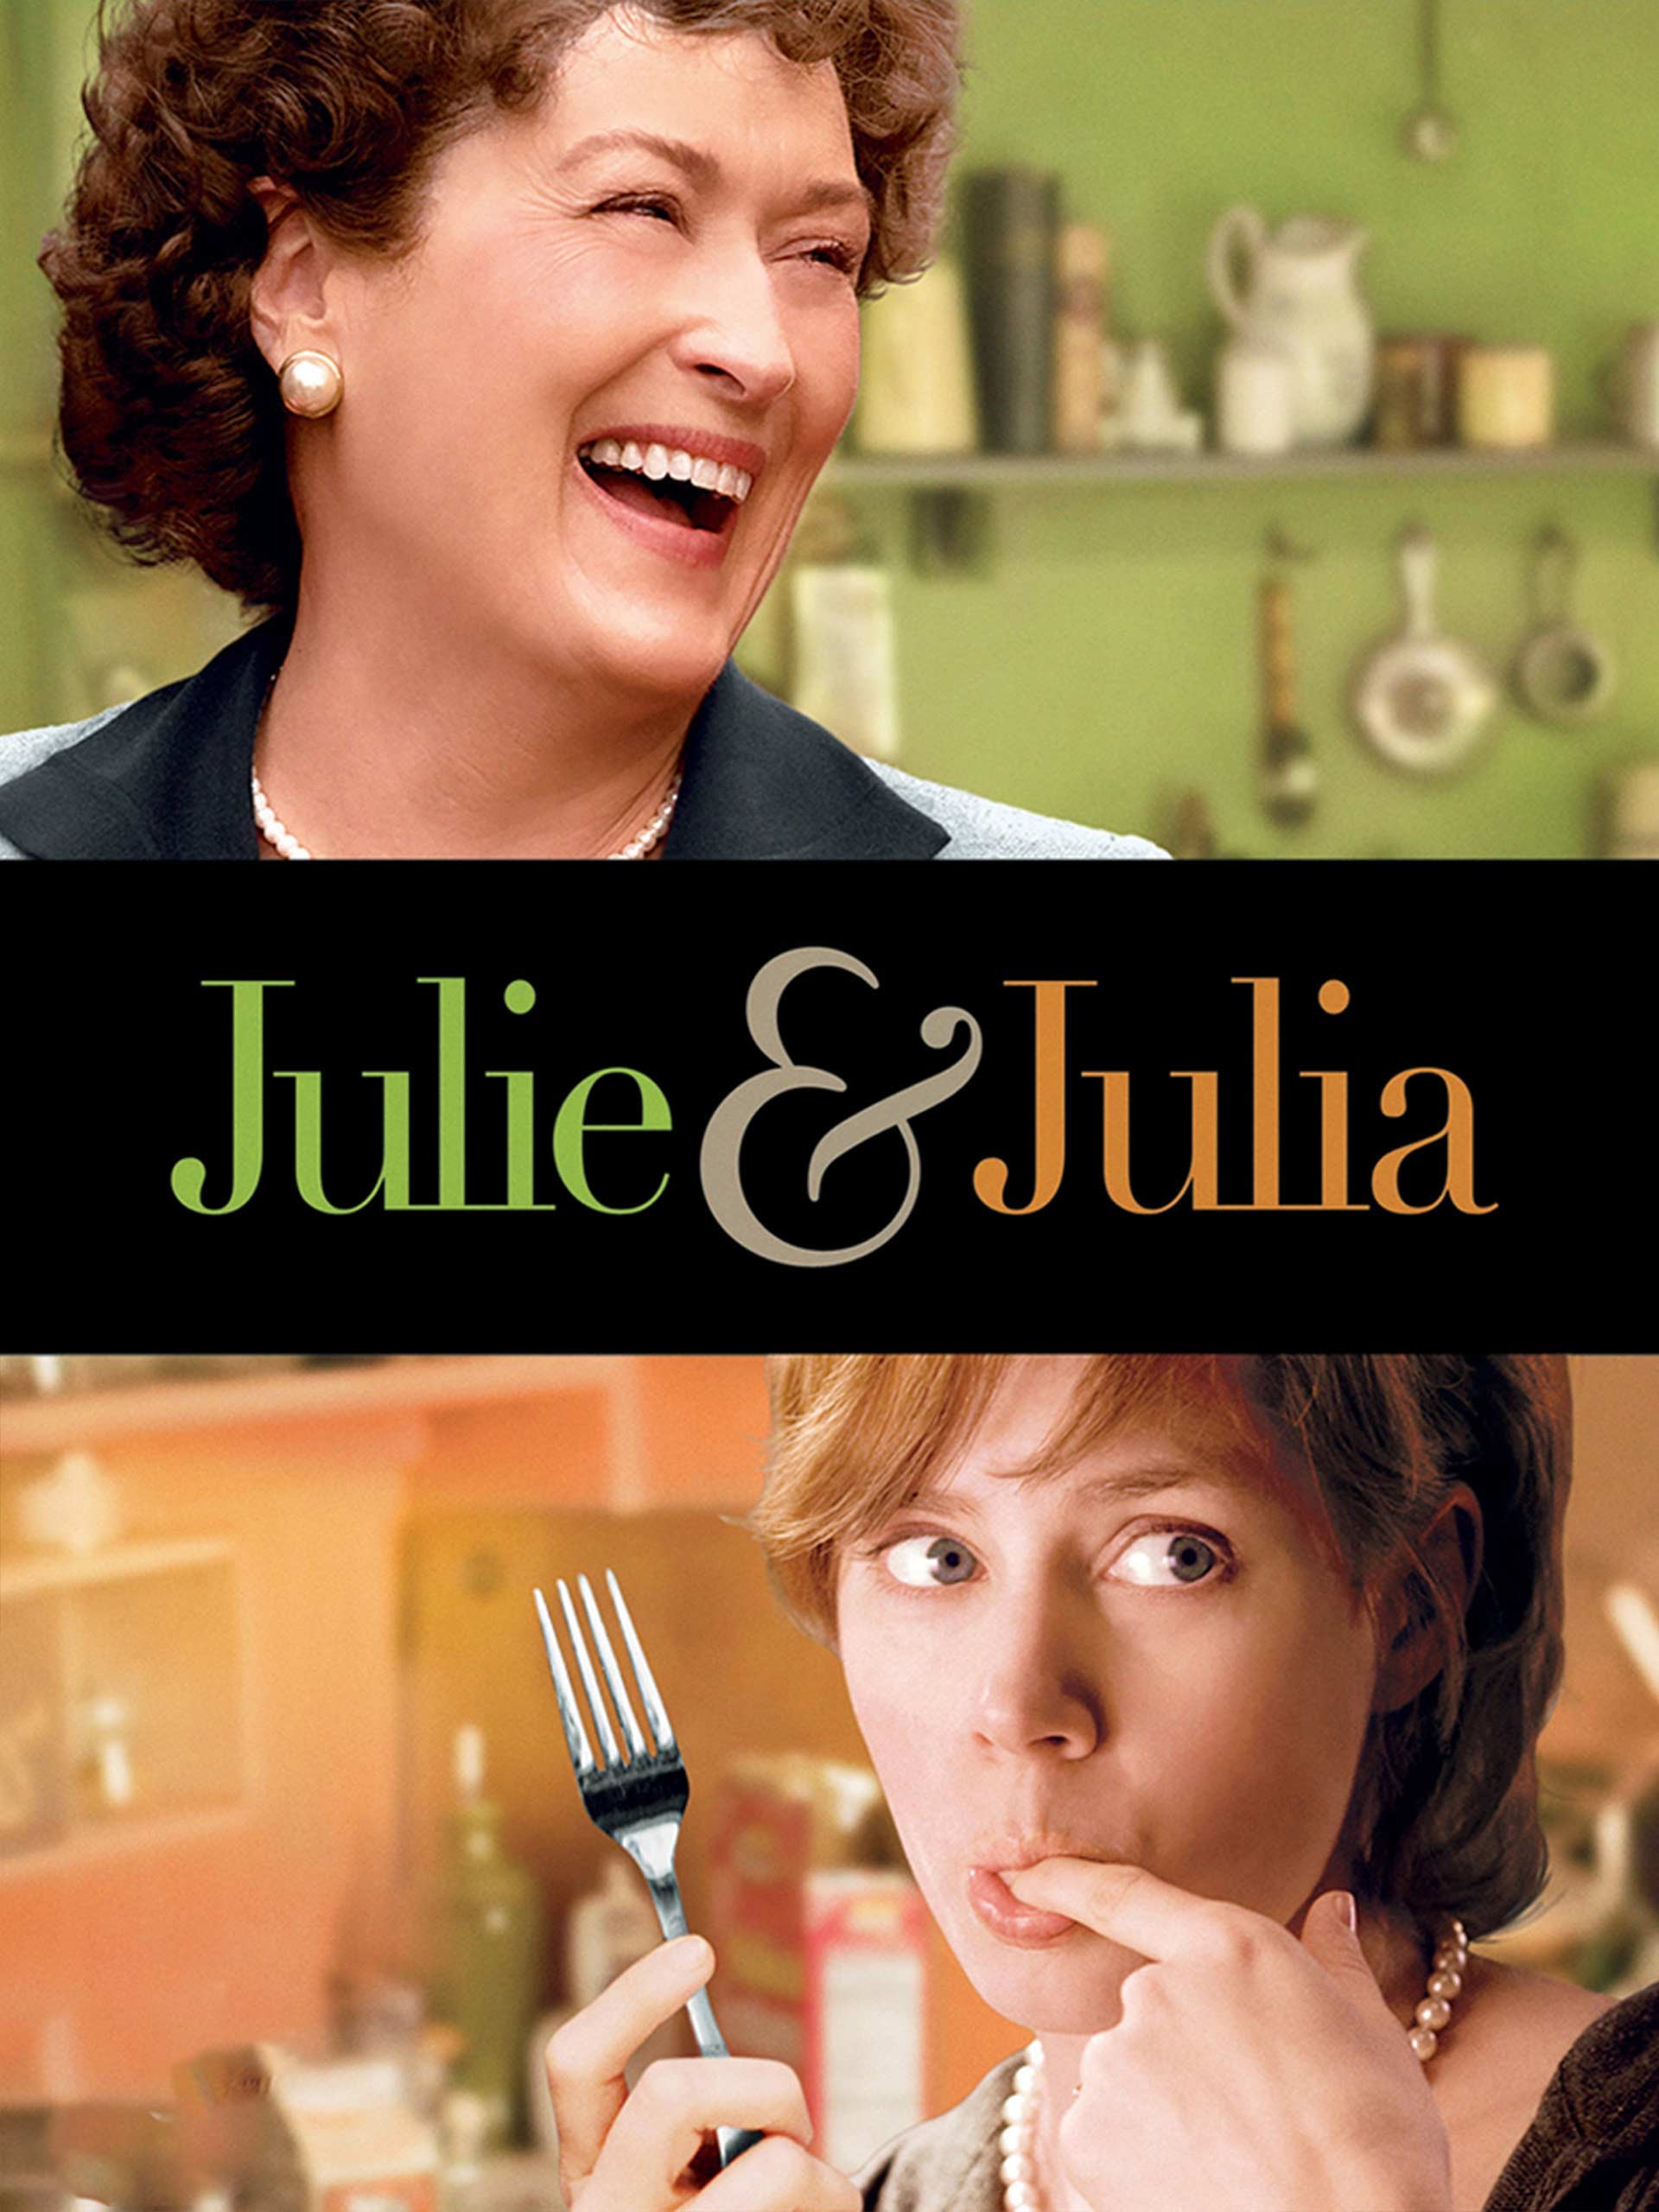 SS: Julie & Julia